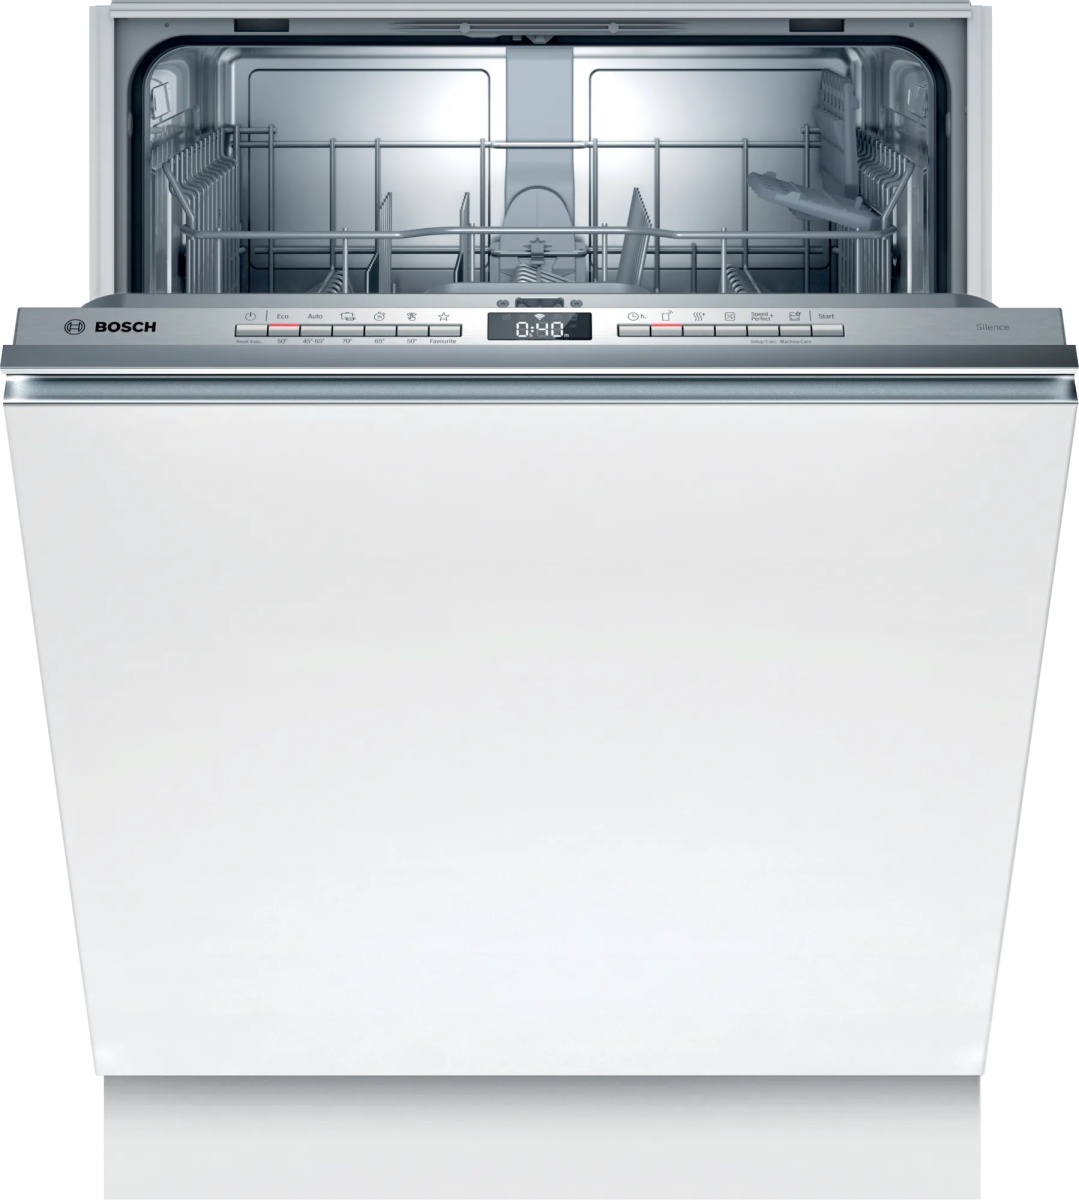 Машина посудомоечная встраиваемая 60 см Bosch SMV4HTX31E (Serie4 / 12 комплектов / 2 полки / расход воды - 9,5 л / InfoLight / Home Connect / А+)